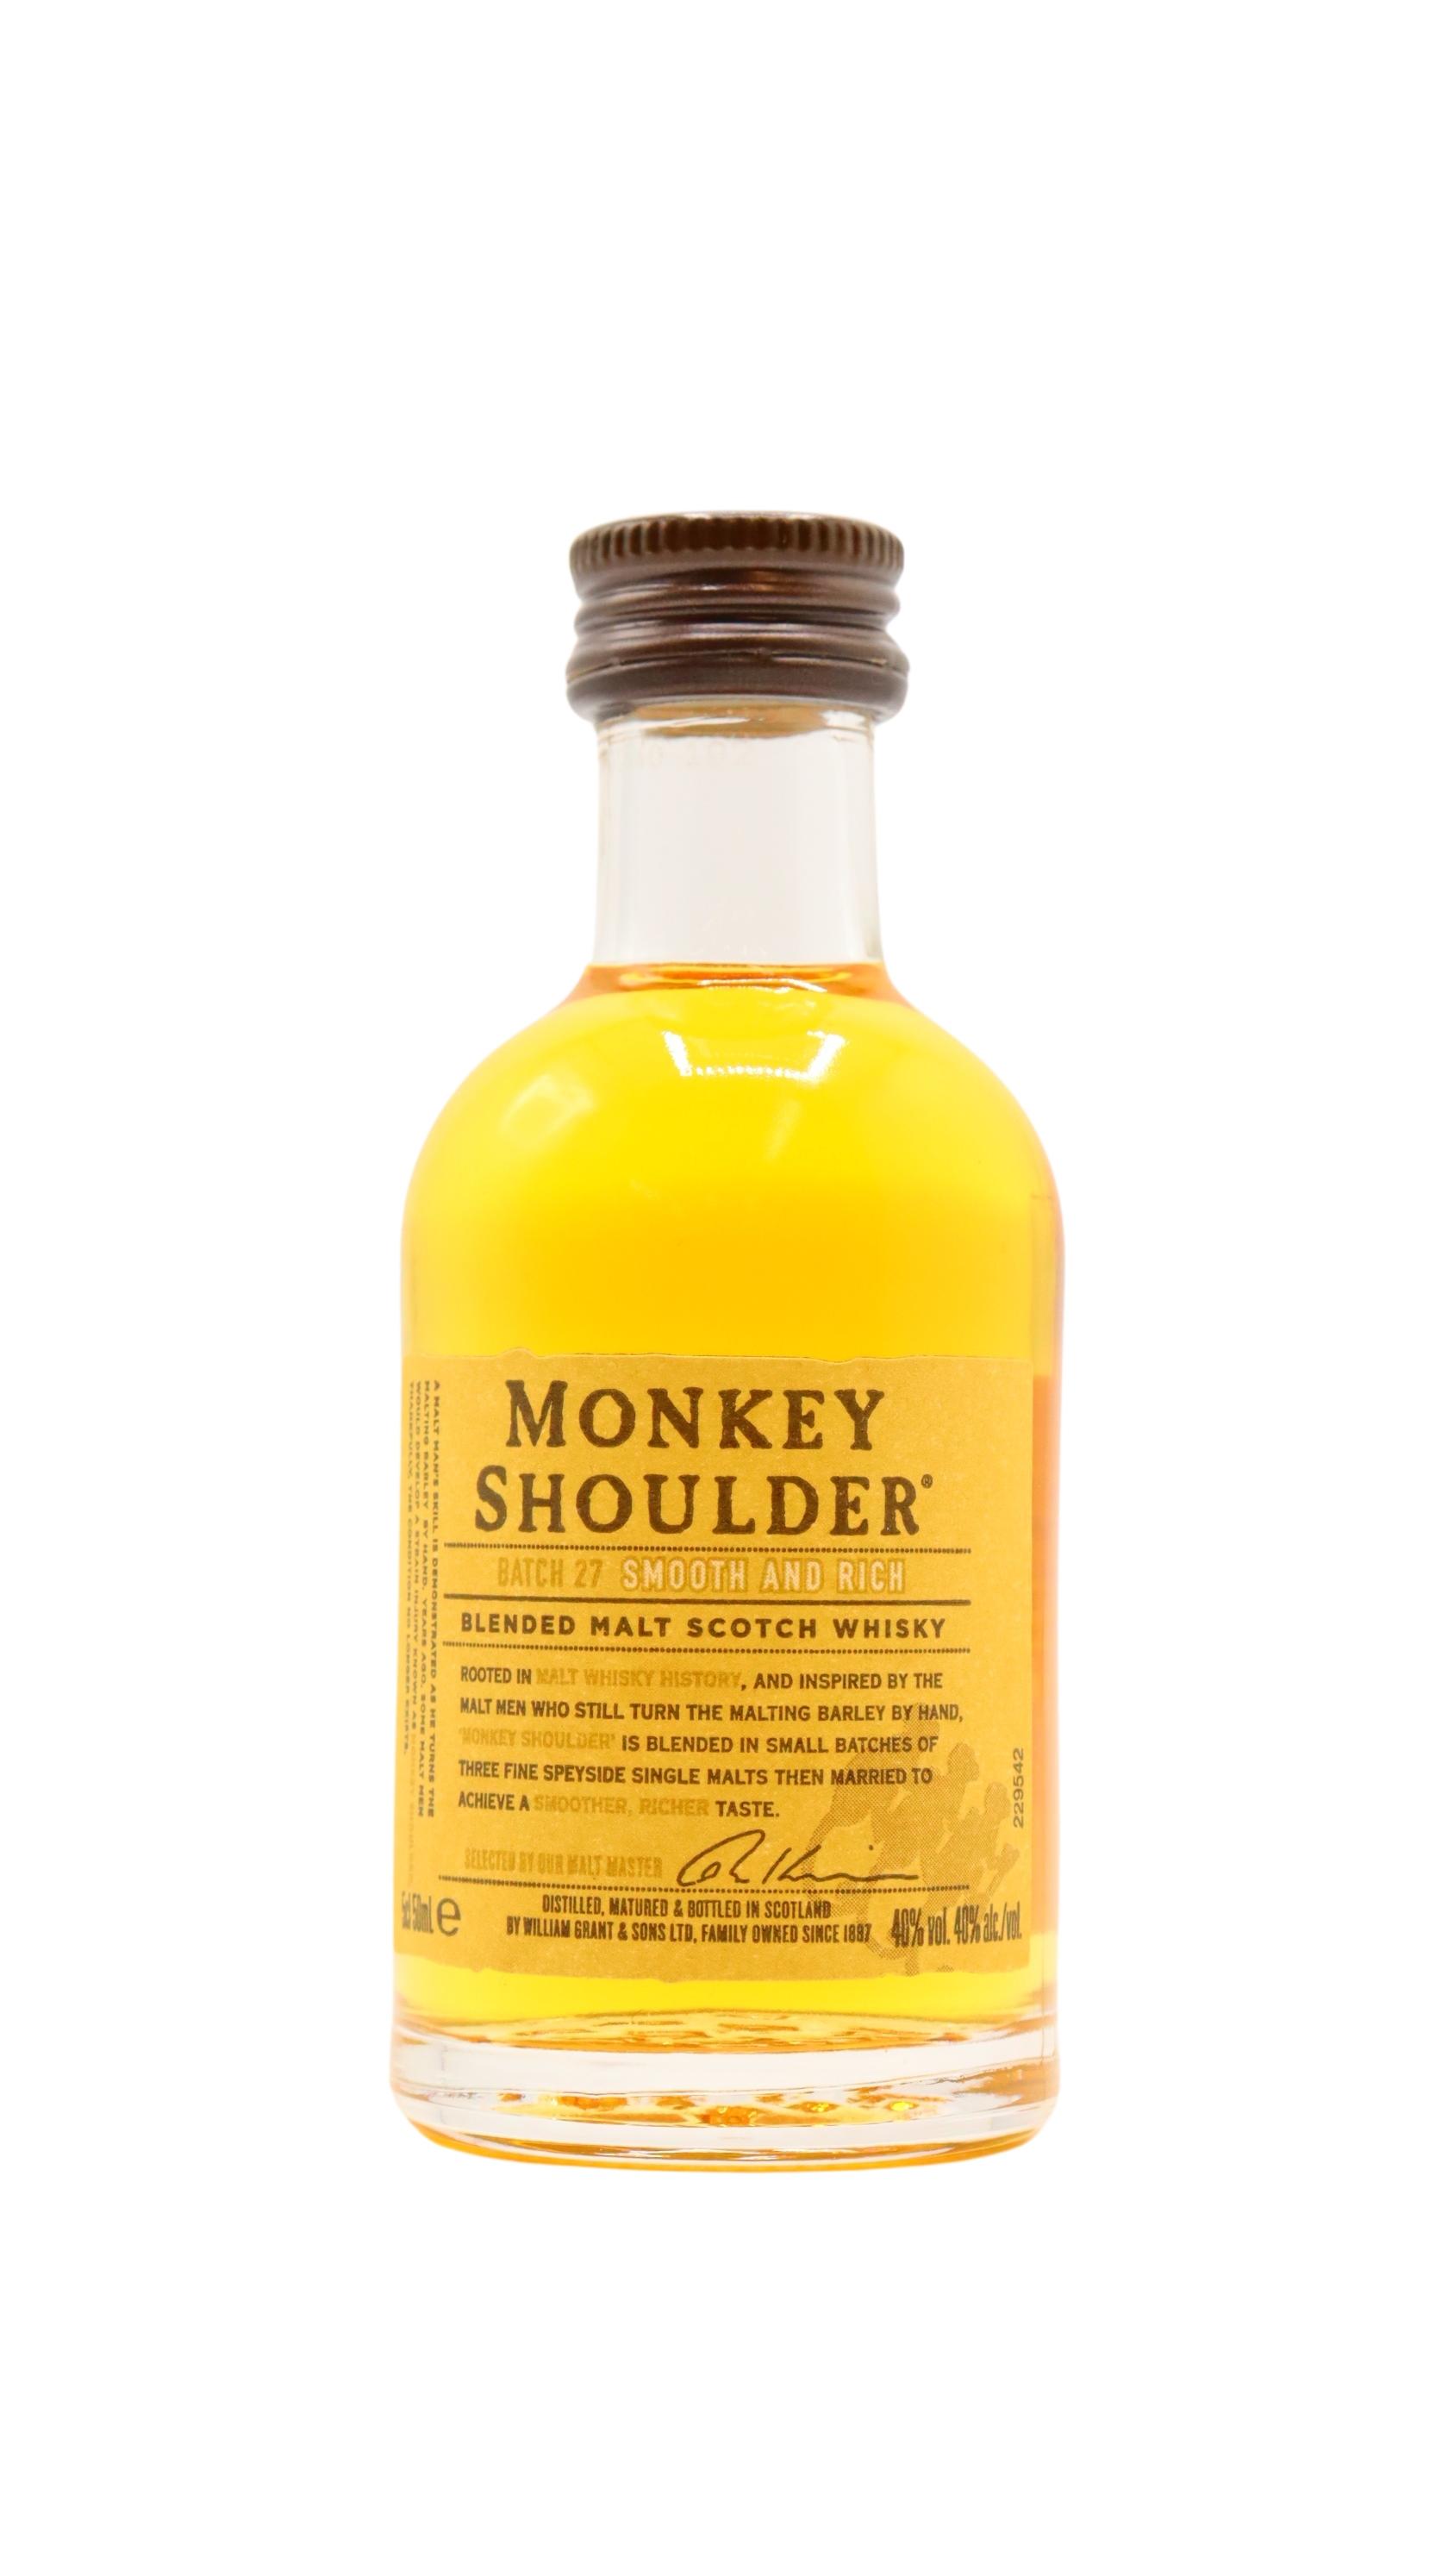 Buy Monkey Shoulder Online 